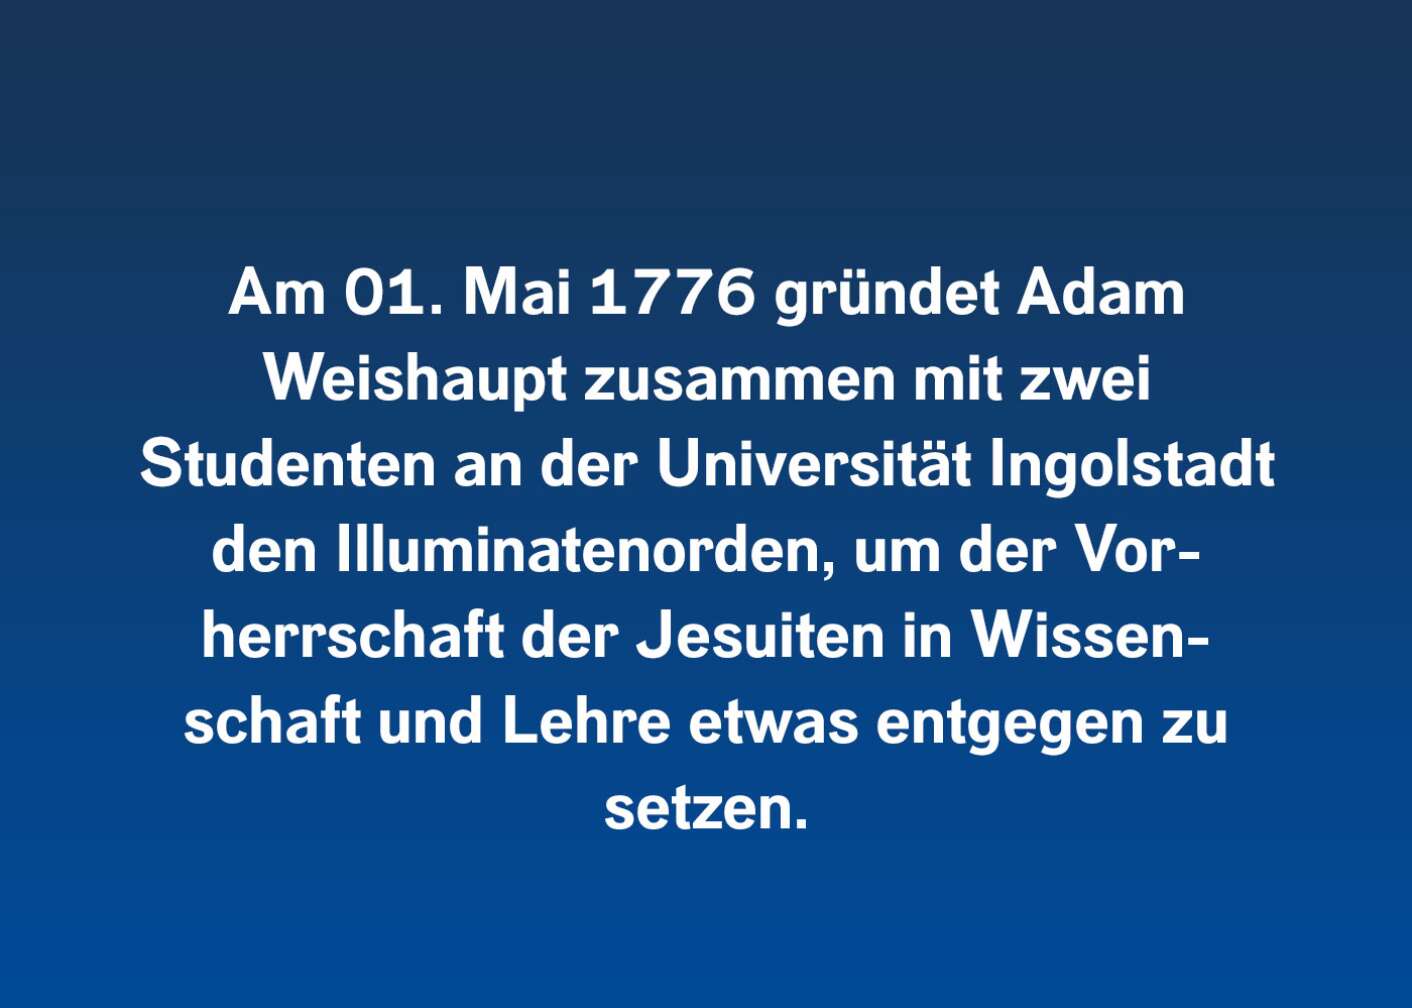 Am 01. Mai 1776 gründet Adam Weishaupt zusammen mit zwei Studenten an der Universität Ingolstadt den Illuminatenorden, um der Vorherrschaft der Jesuiten in Wissenschaft und Lehre etwas entgegenzusetzen.